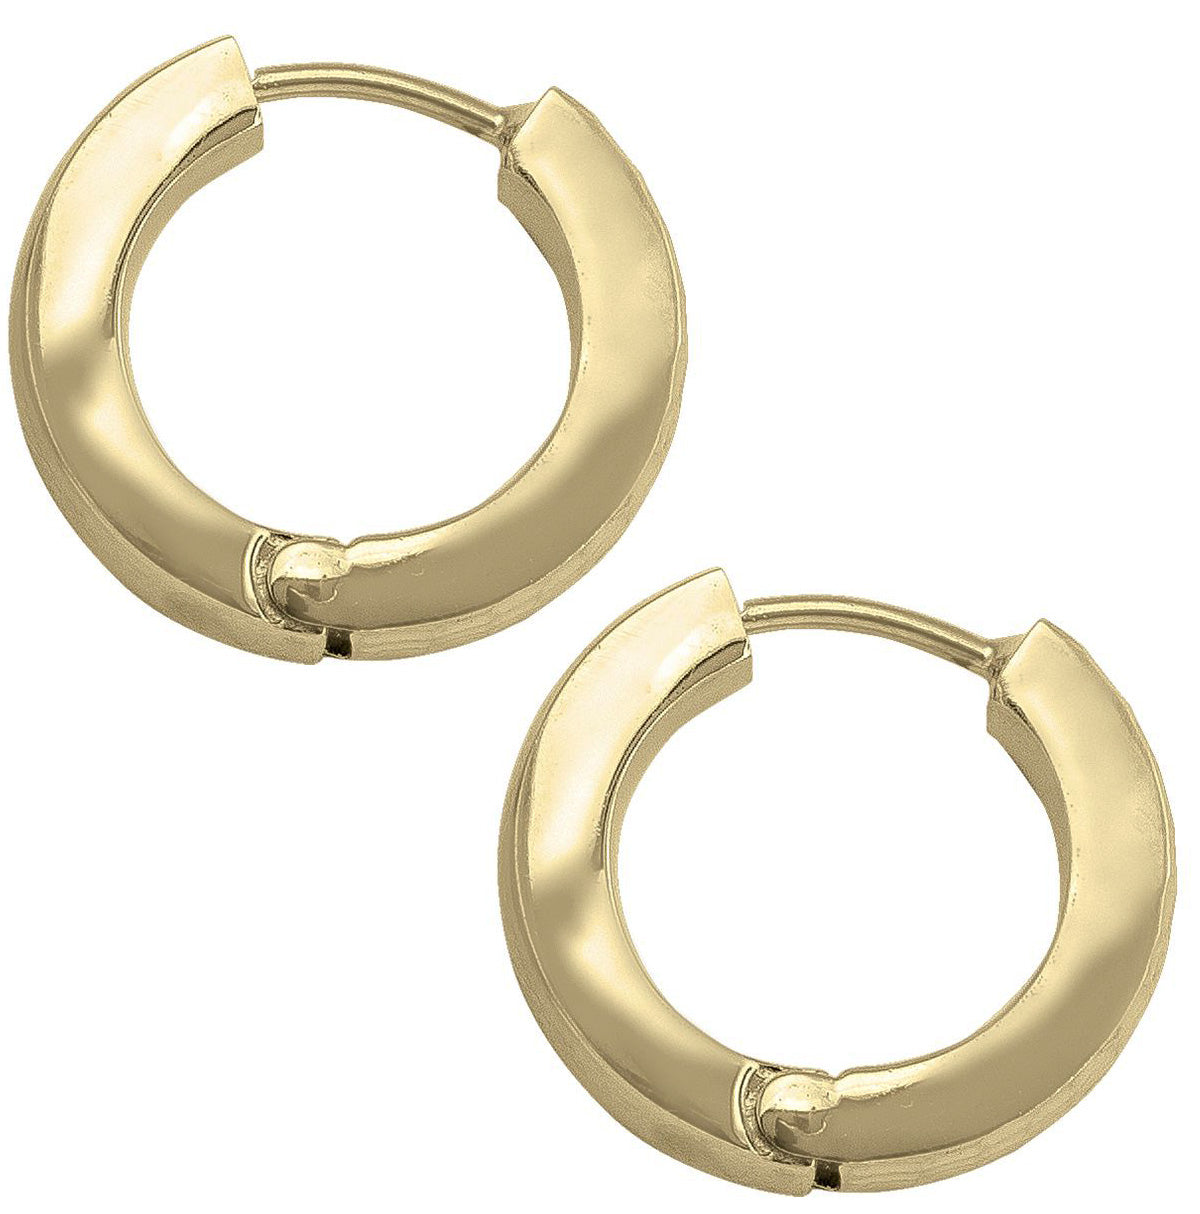 EHG0105, Gold Earrings, Huggies, 4.7 mm Tubing